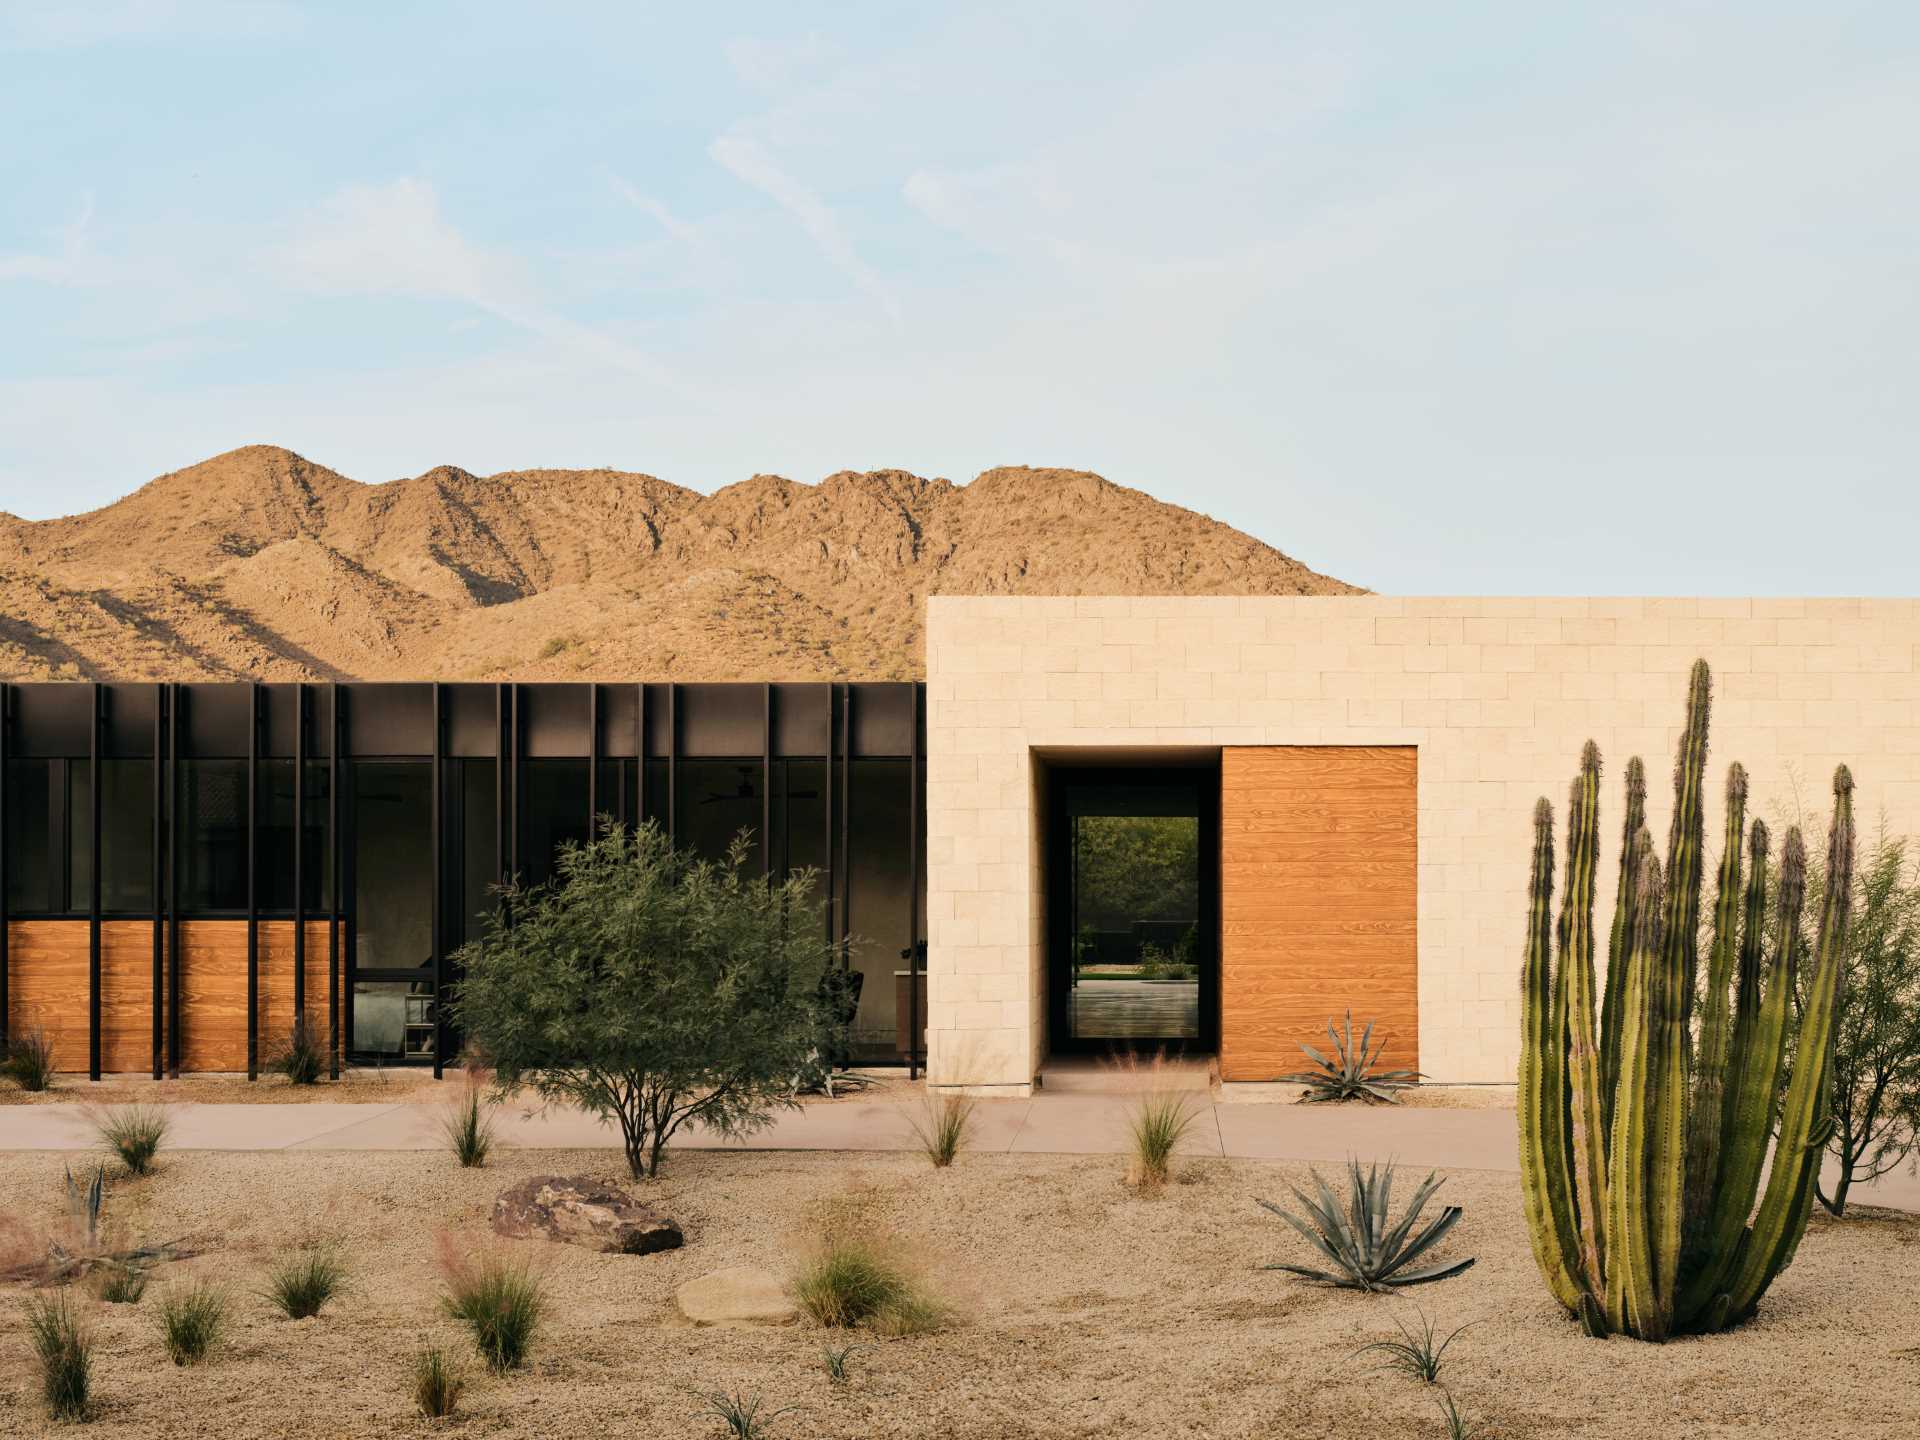 Pe măsură ce vă apropiați de această casă modernă din deșert, primul lucru care captează privirea este interacțiunea izbitoare a aripioarelor metalice care împodobesc exteriorul, care au fost inspirate de plantele Ocotillo.